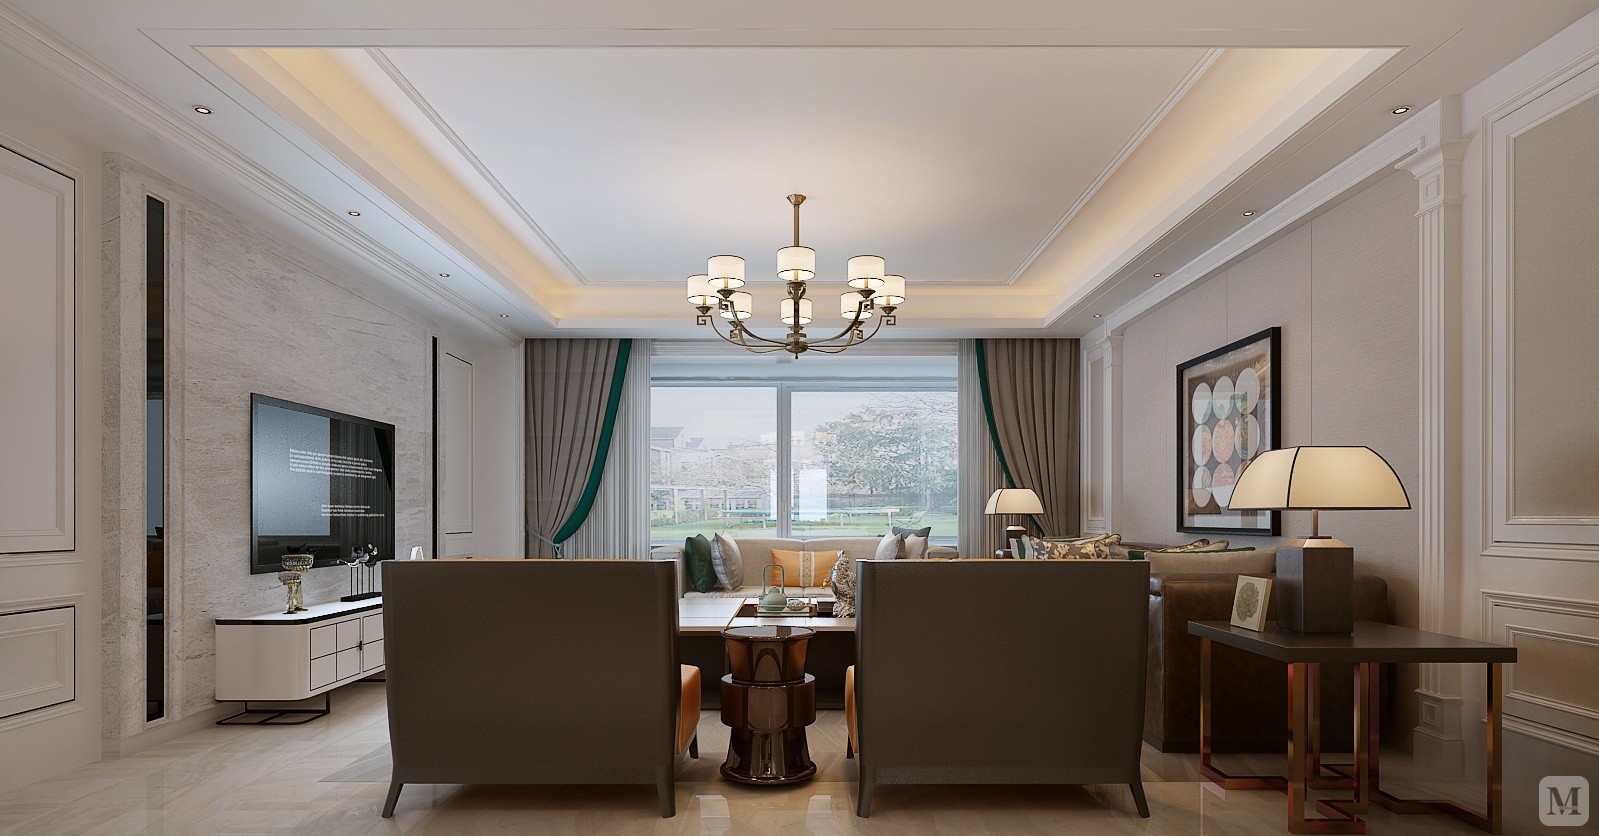 客厅是极具画面感的一个区域。白色铺陈出干净的场域氛围，木色与生俱来的温润属性和细腻质感注入地板和家具，配合直接的线条勾勒，展现出淡雅朴实的原始美感。